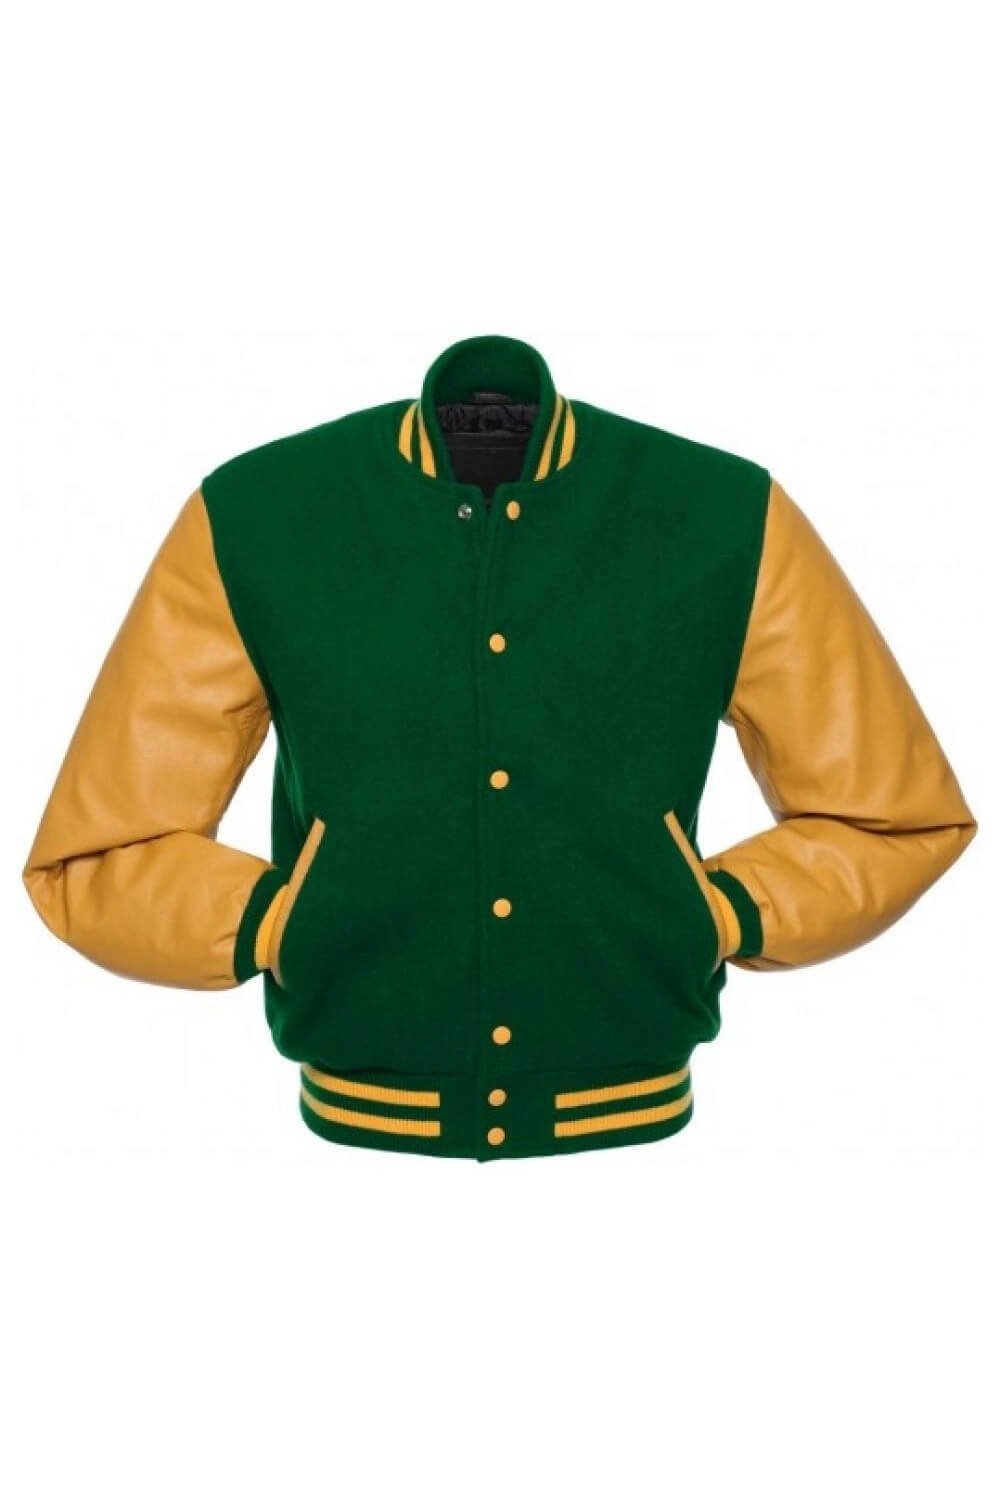 Letterman Green varsity jacket